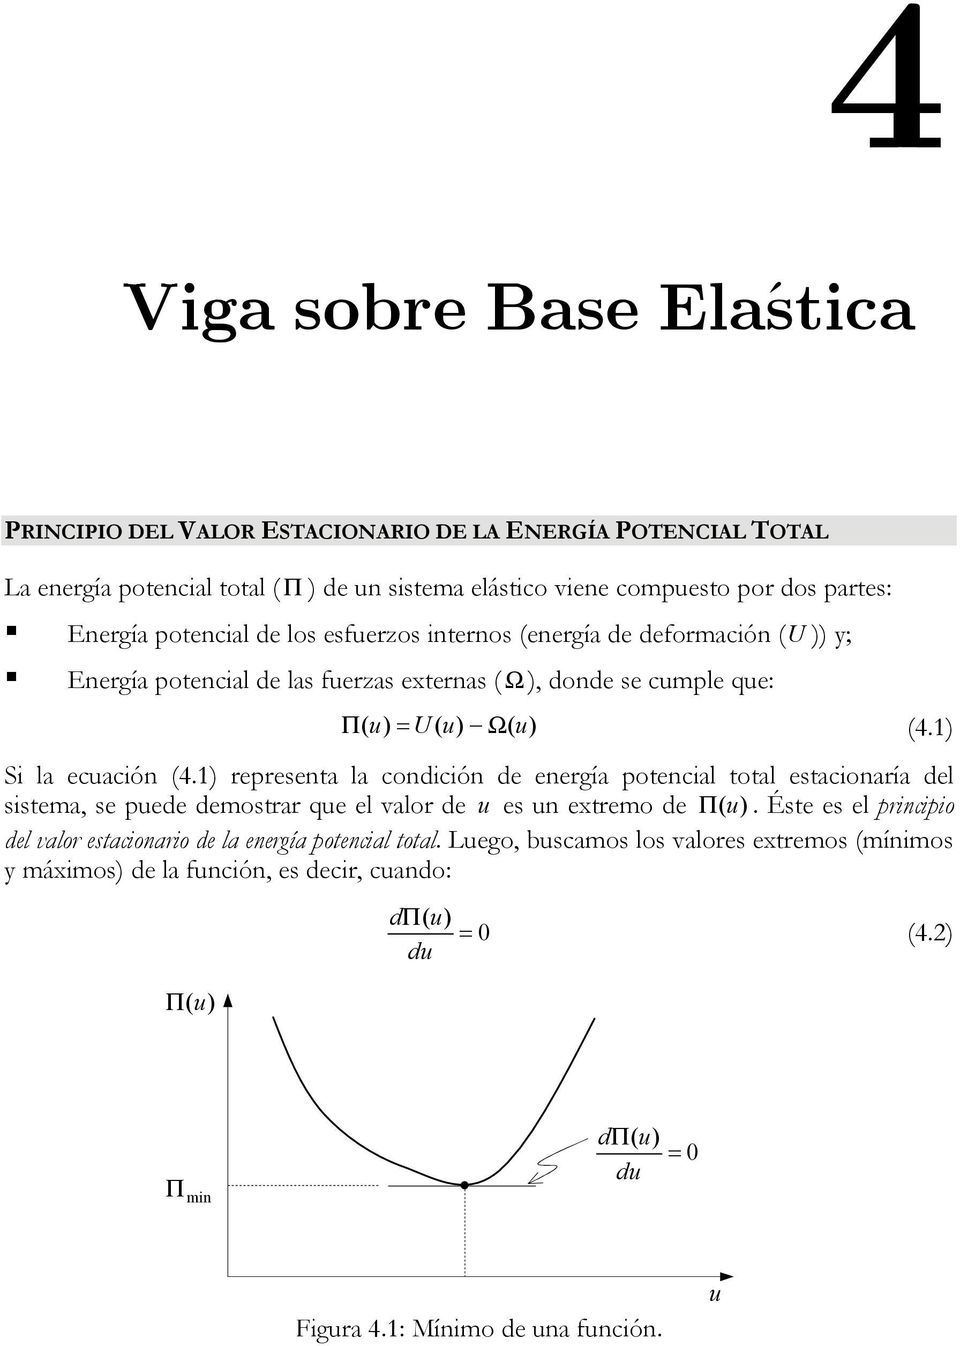 e: Π U Ω. Si la ecación. representa la conición e energía potencial total estacionaría el sistema, se pee emostrar e el valor e es n etremo e Π.